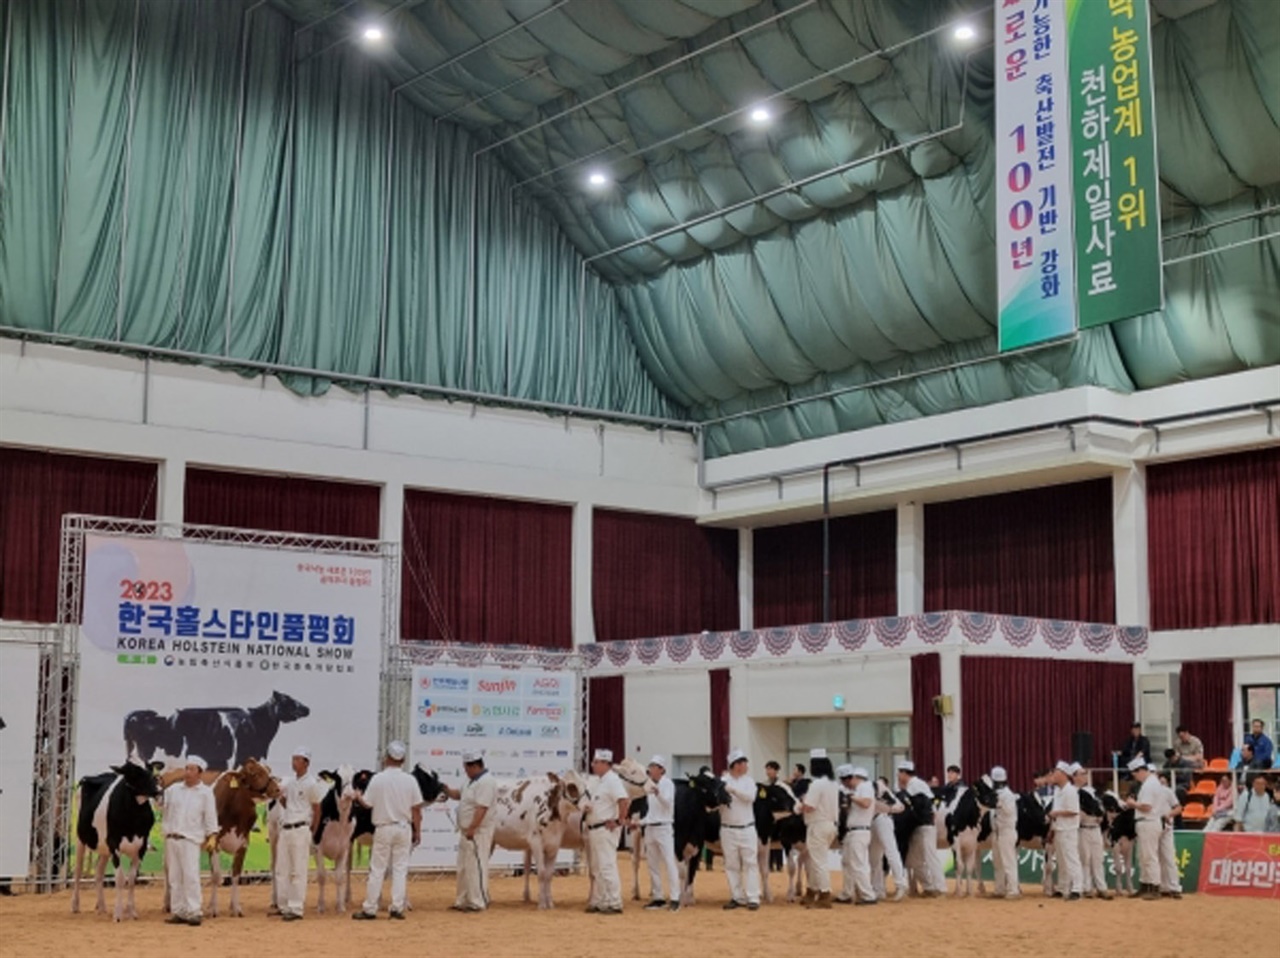 경기 여주시는 2023년 한국홀스타인품평회에서 대영목장이 젖소육종농가 최우수상을 수상하는 등 3개 농가가 13개 부문에서 상을 받았다